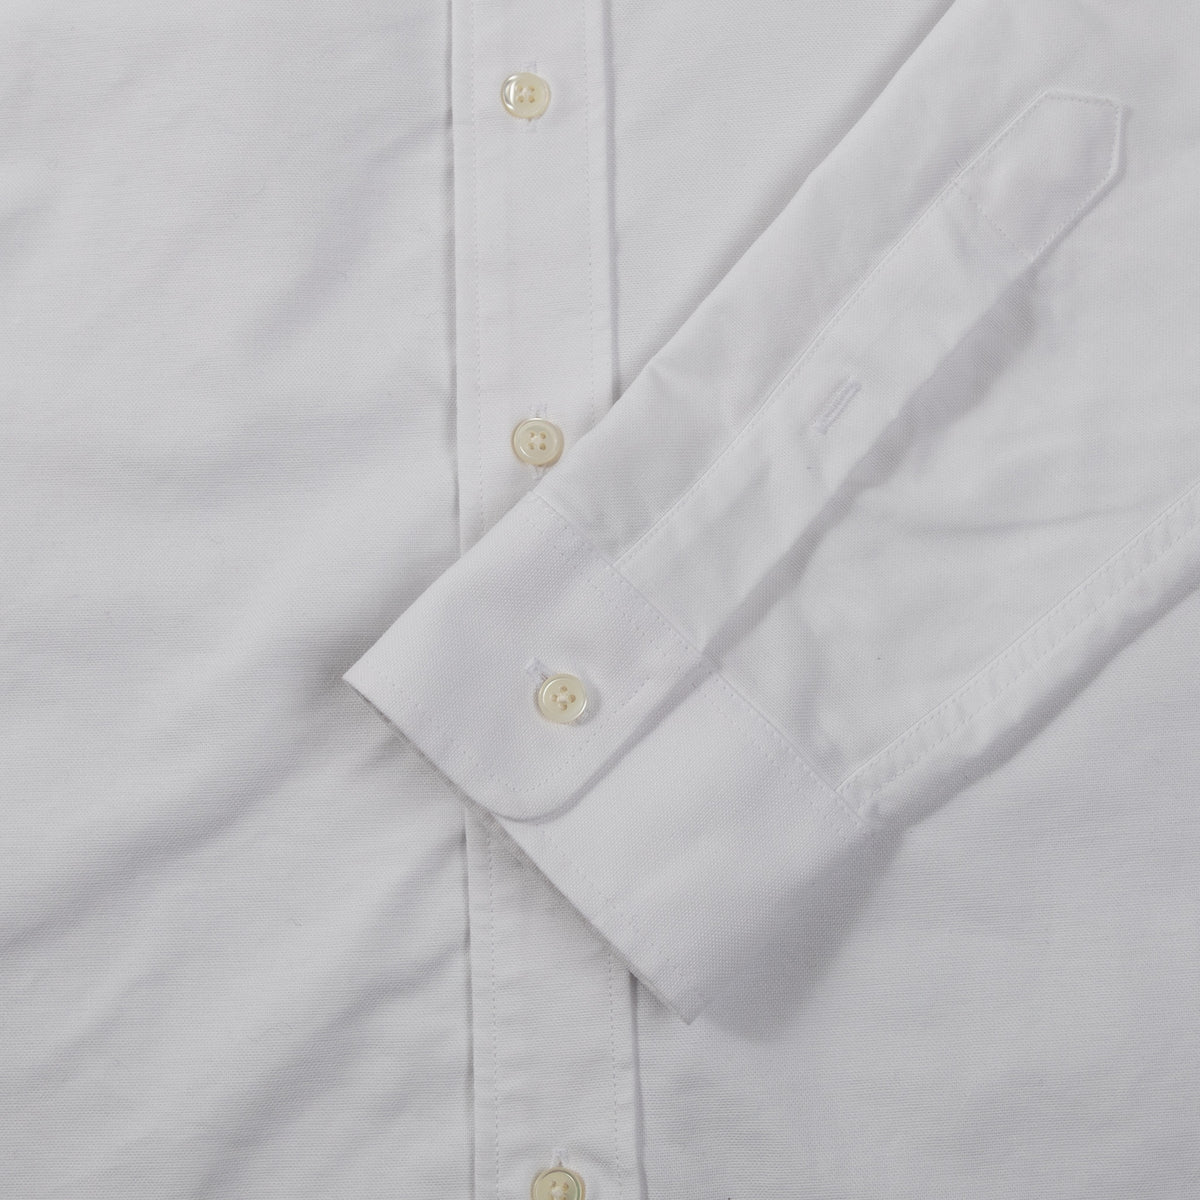 schnaydermans Shirt Oxford One button up white cuff